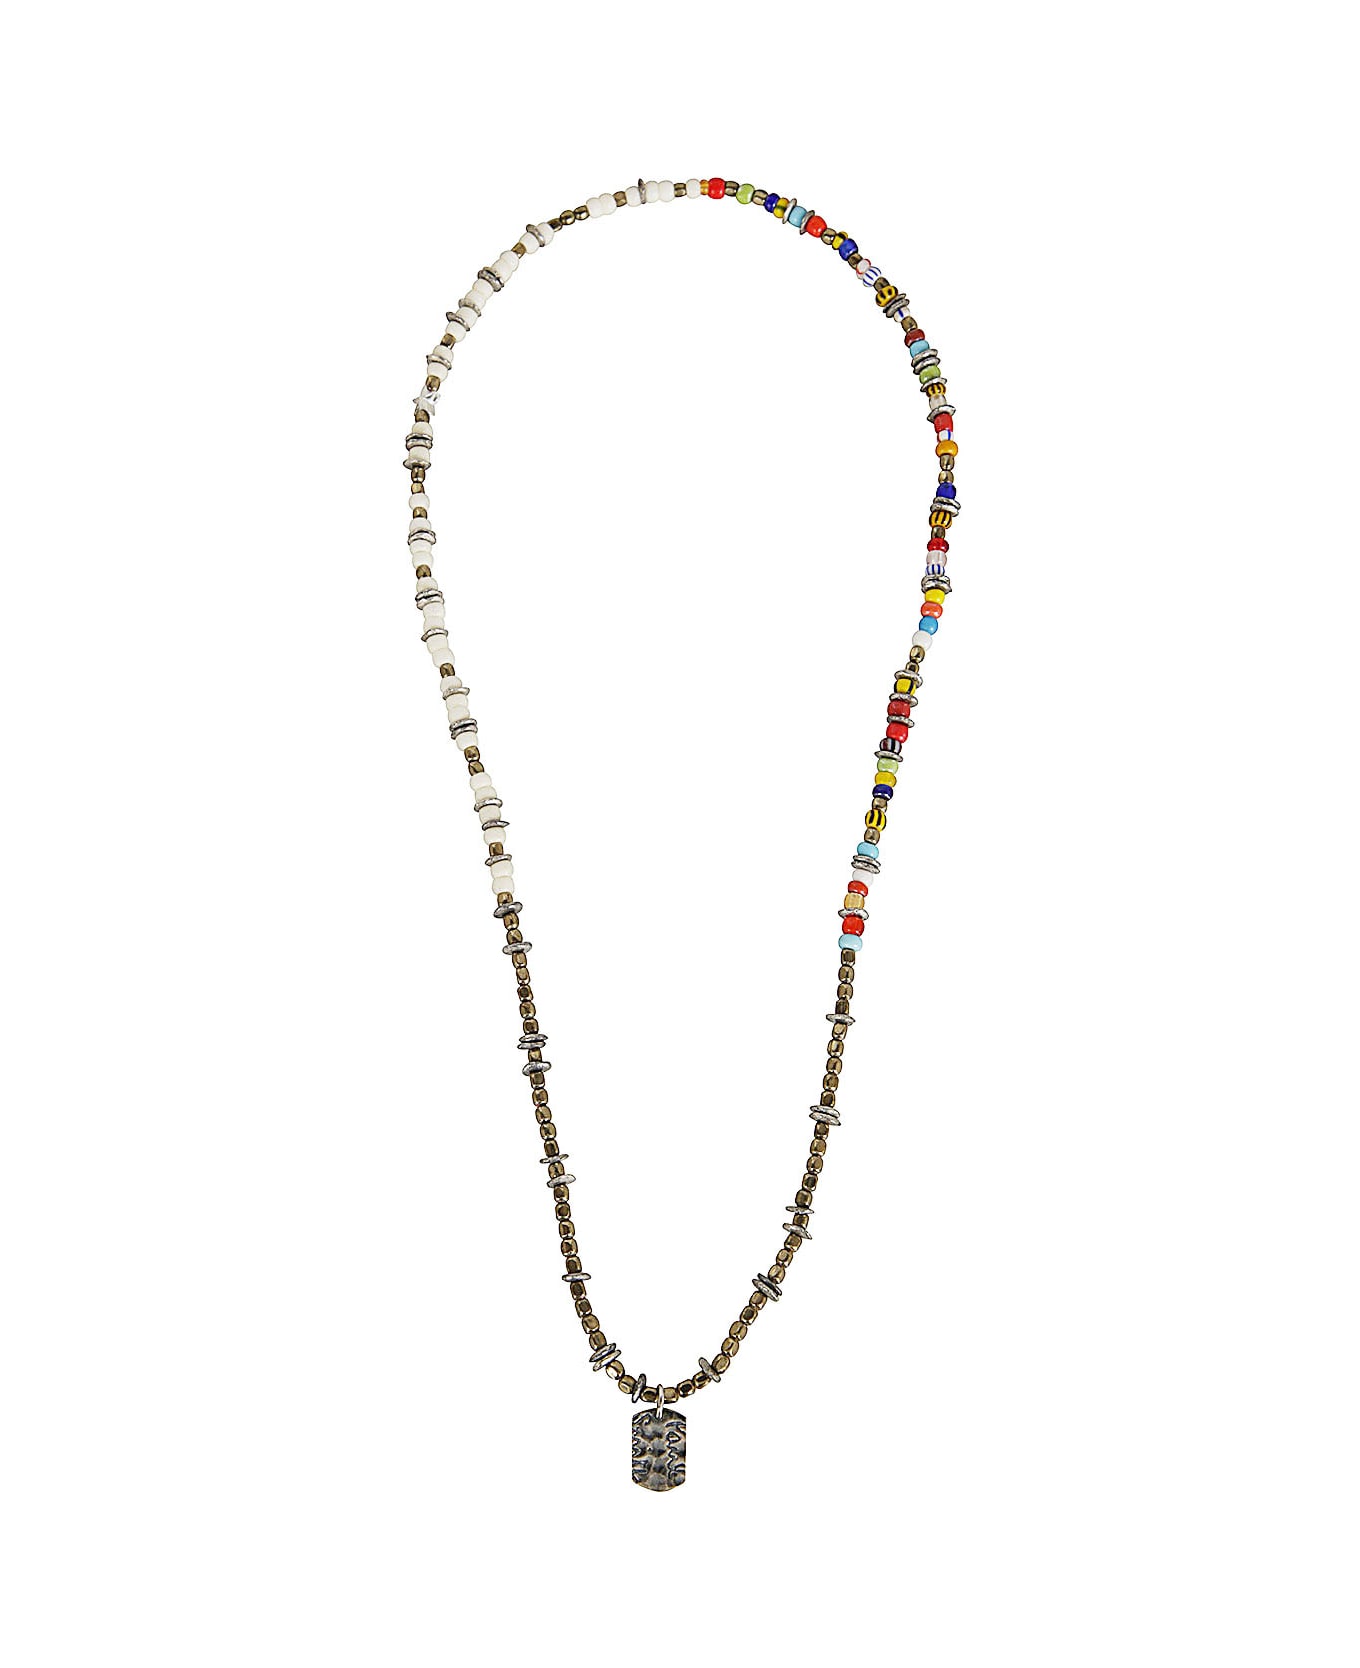 Paul Smith Men Necklace Mixed Bead - Multicolour